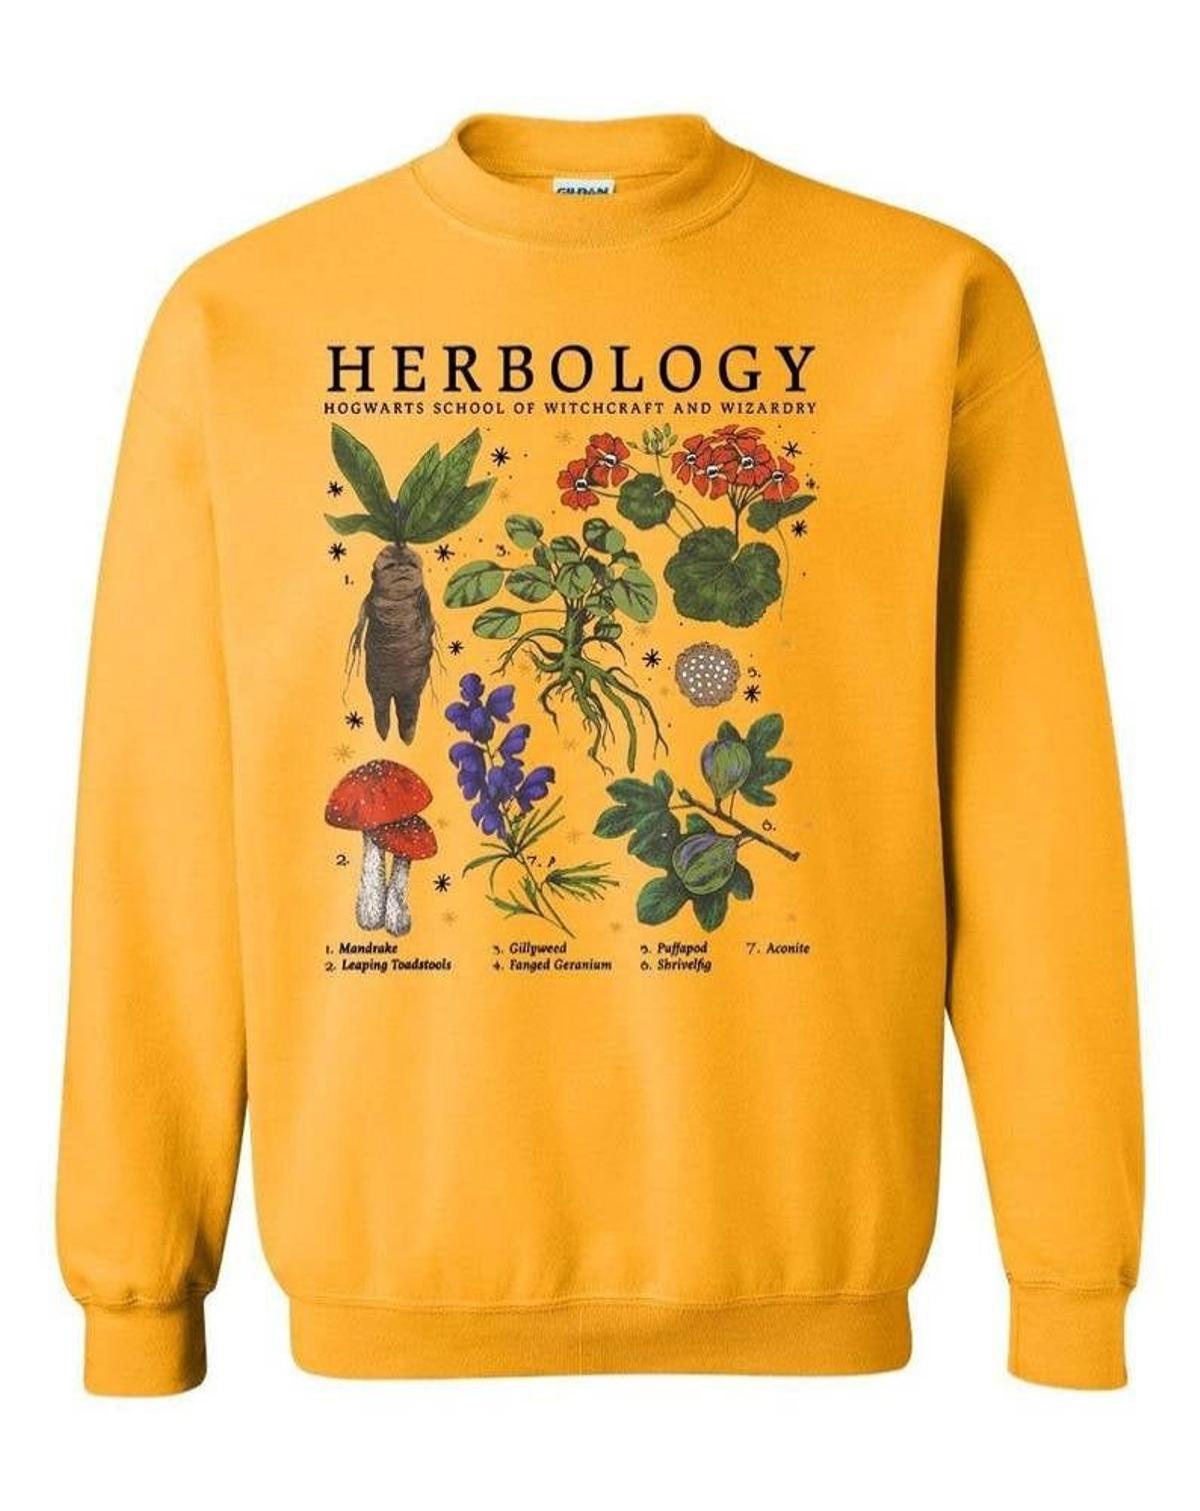 Sudadera Herbology, de Trending Outfitters (precio: 23,47 euros)